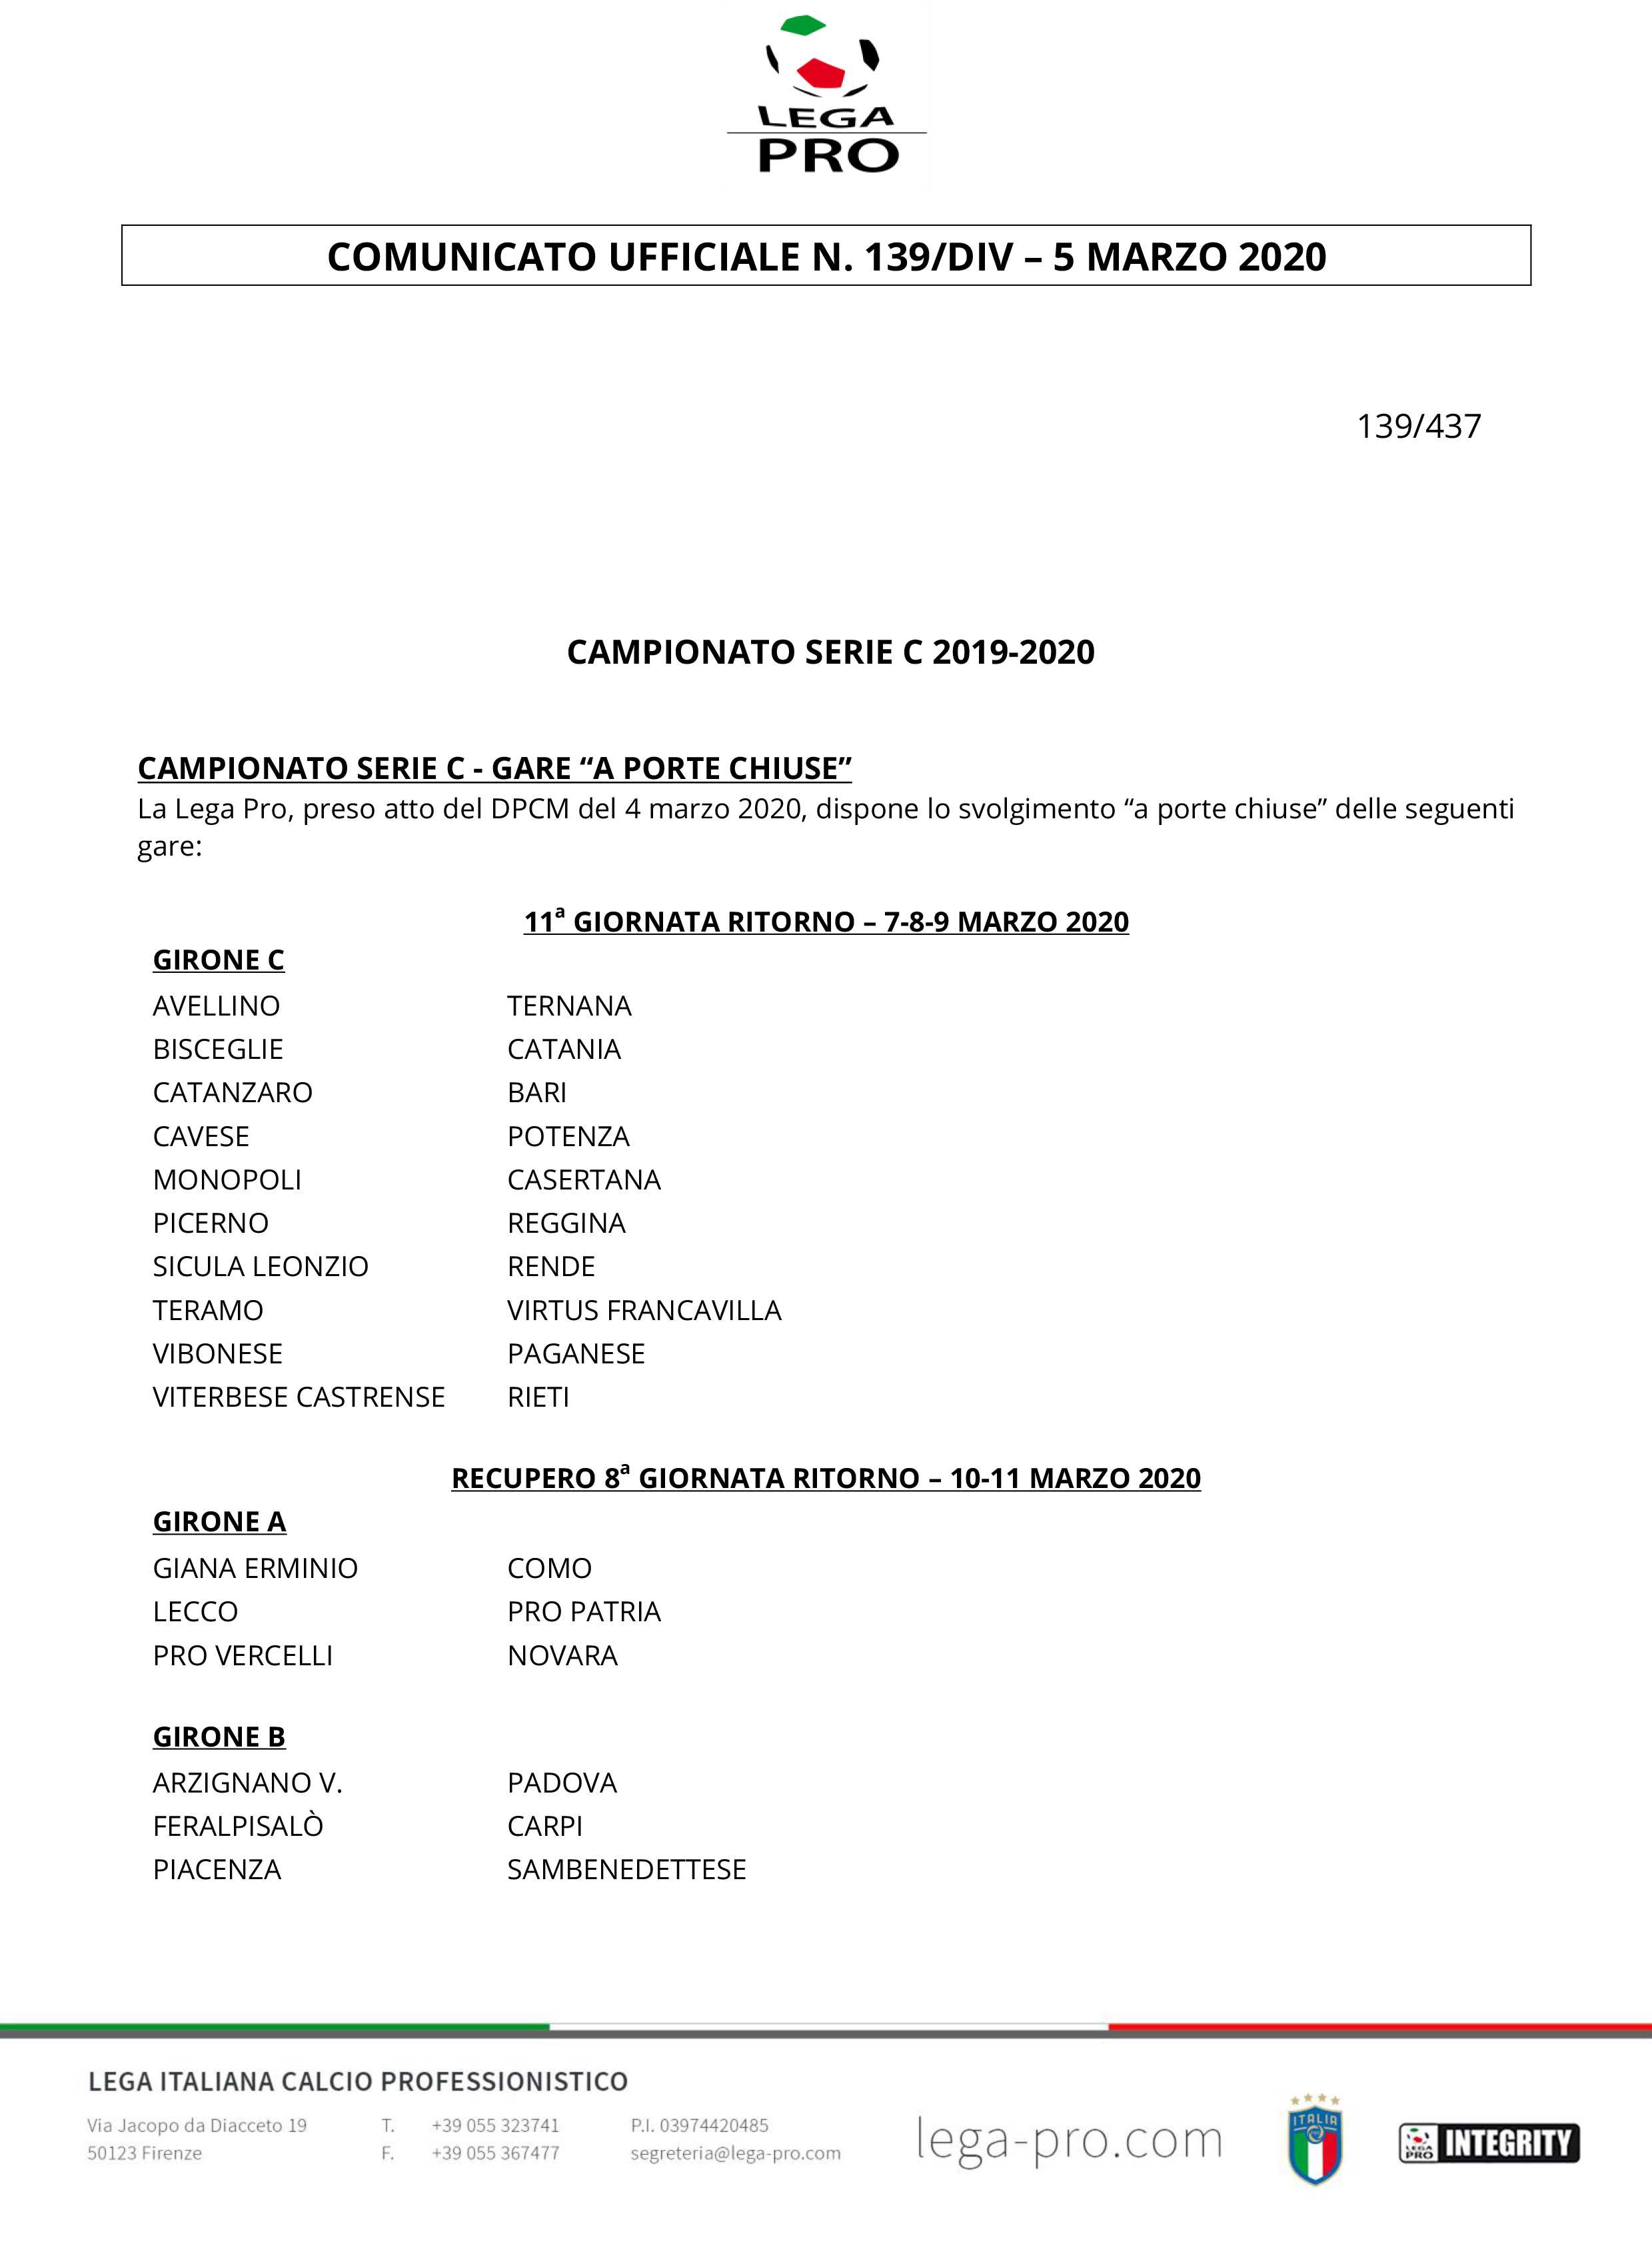 Coronavirus, La Lega Pro. Campionato Serie C - gare “a porte chiuse”  'Ecco le direttive ufficiali'